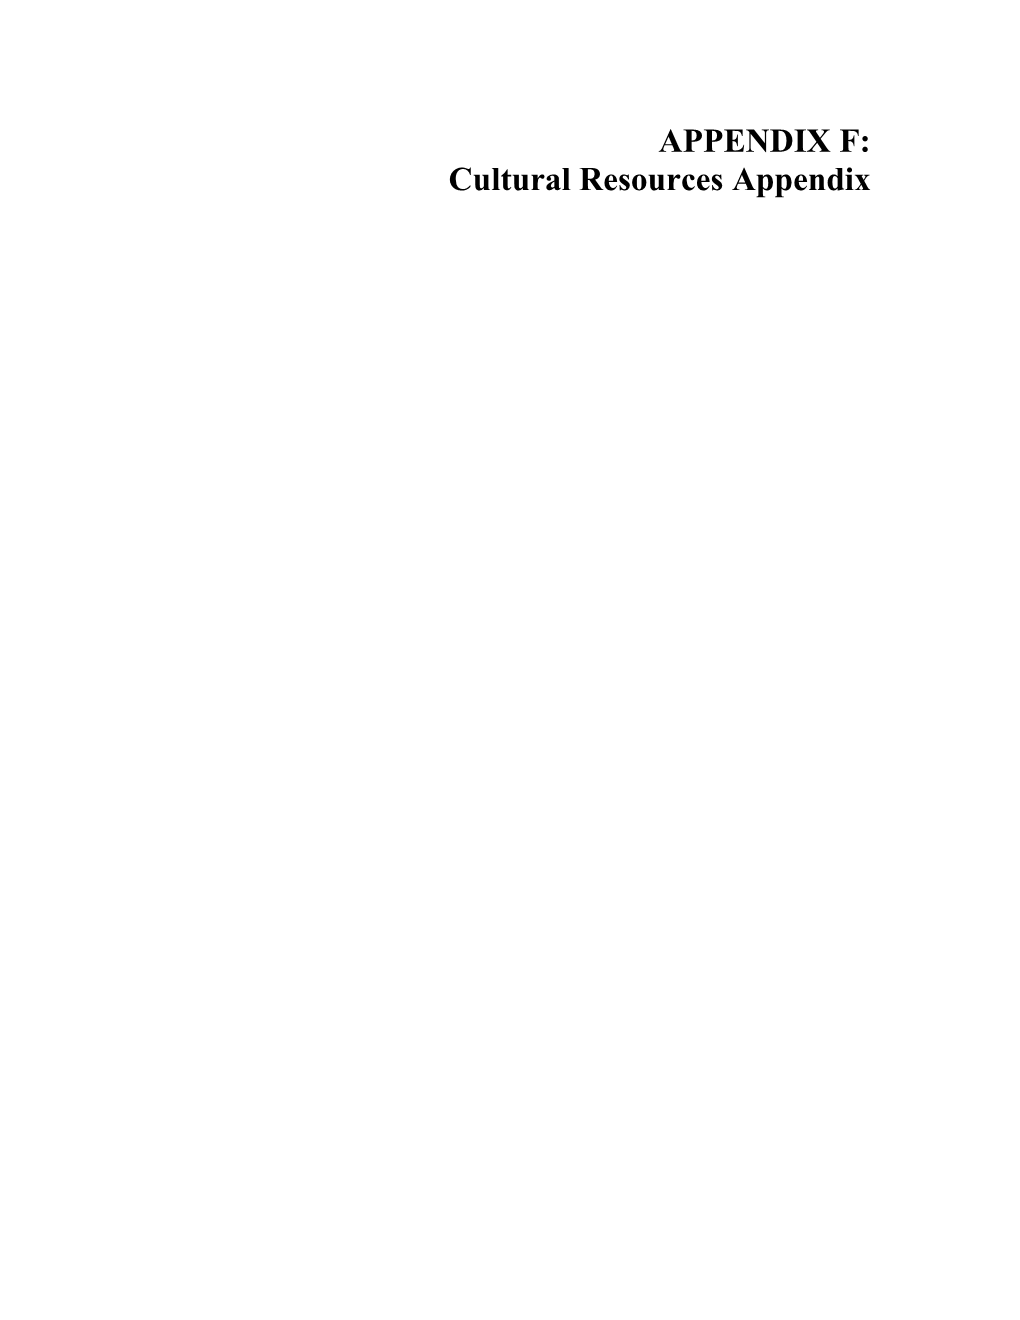 Cultural Resources Appendix